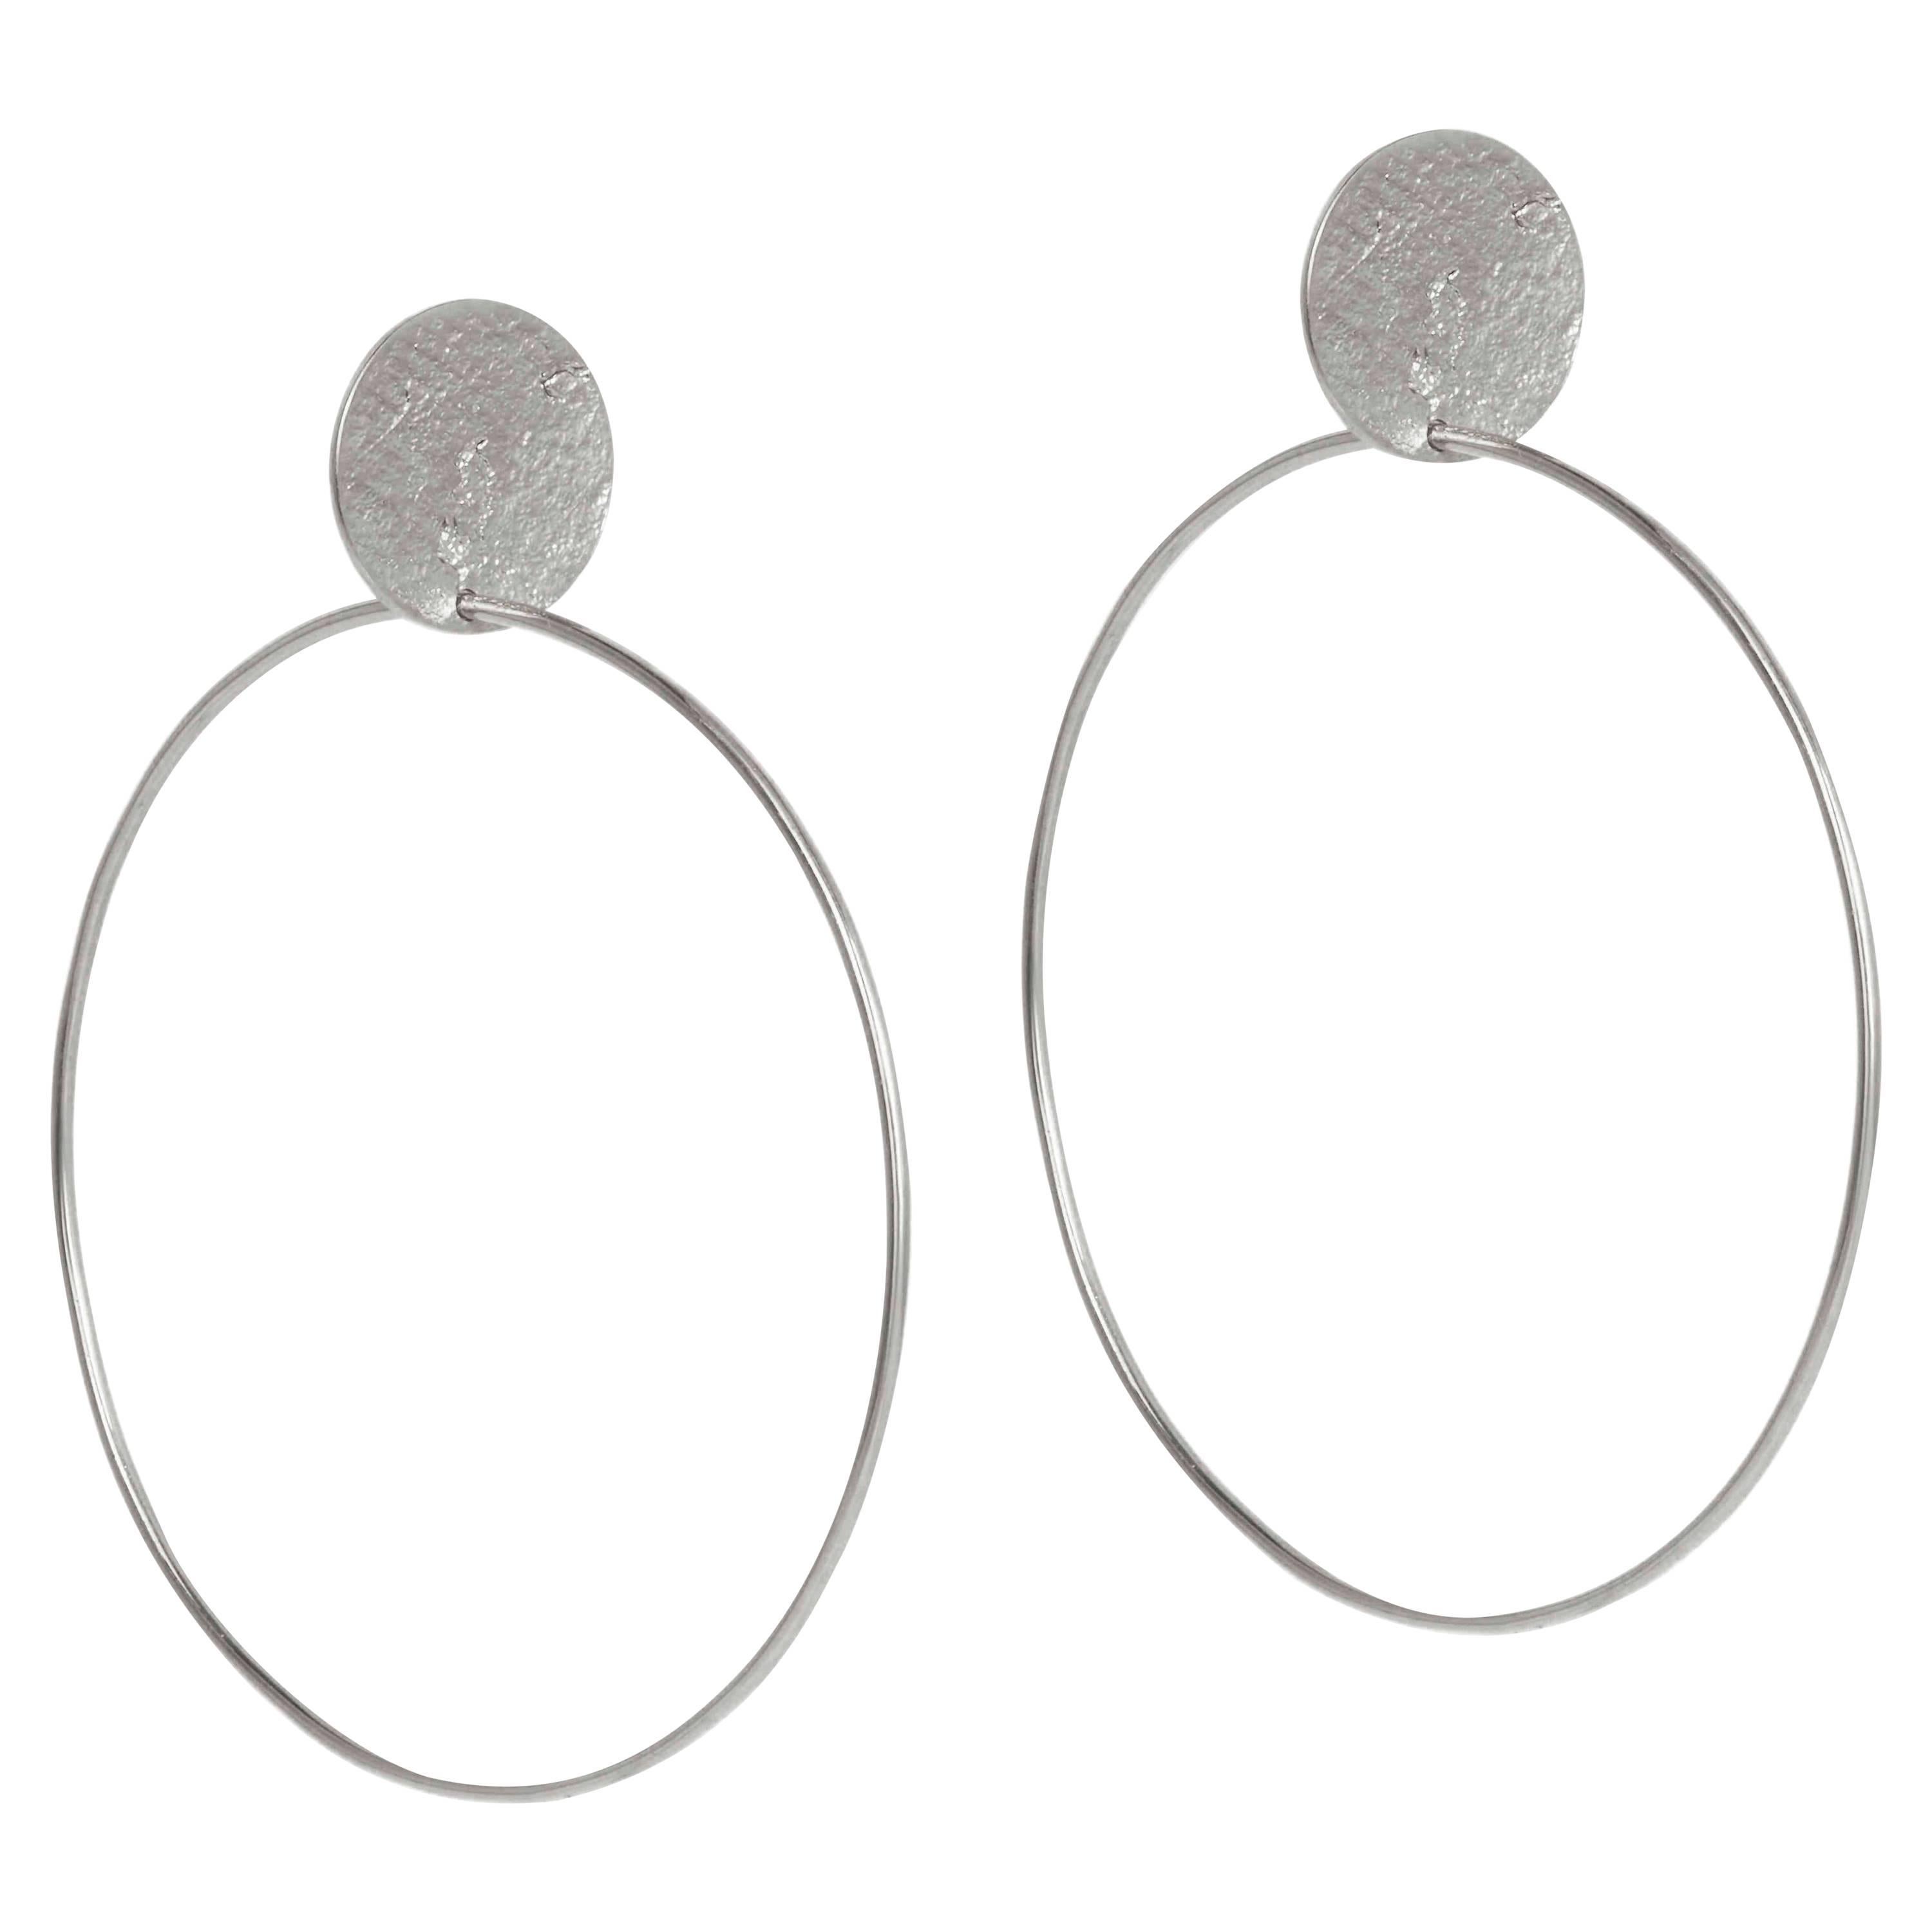 Stud and Hoop Earrings by Allison Bryan in Silver